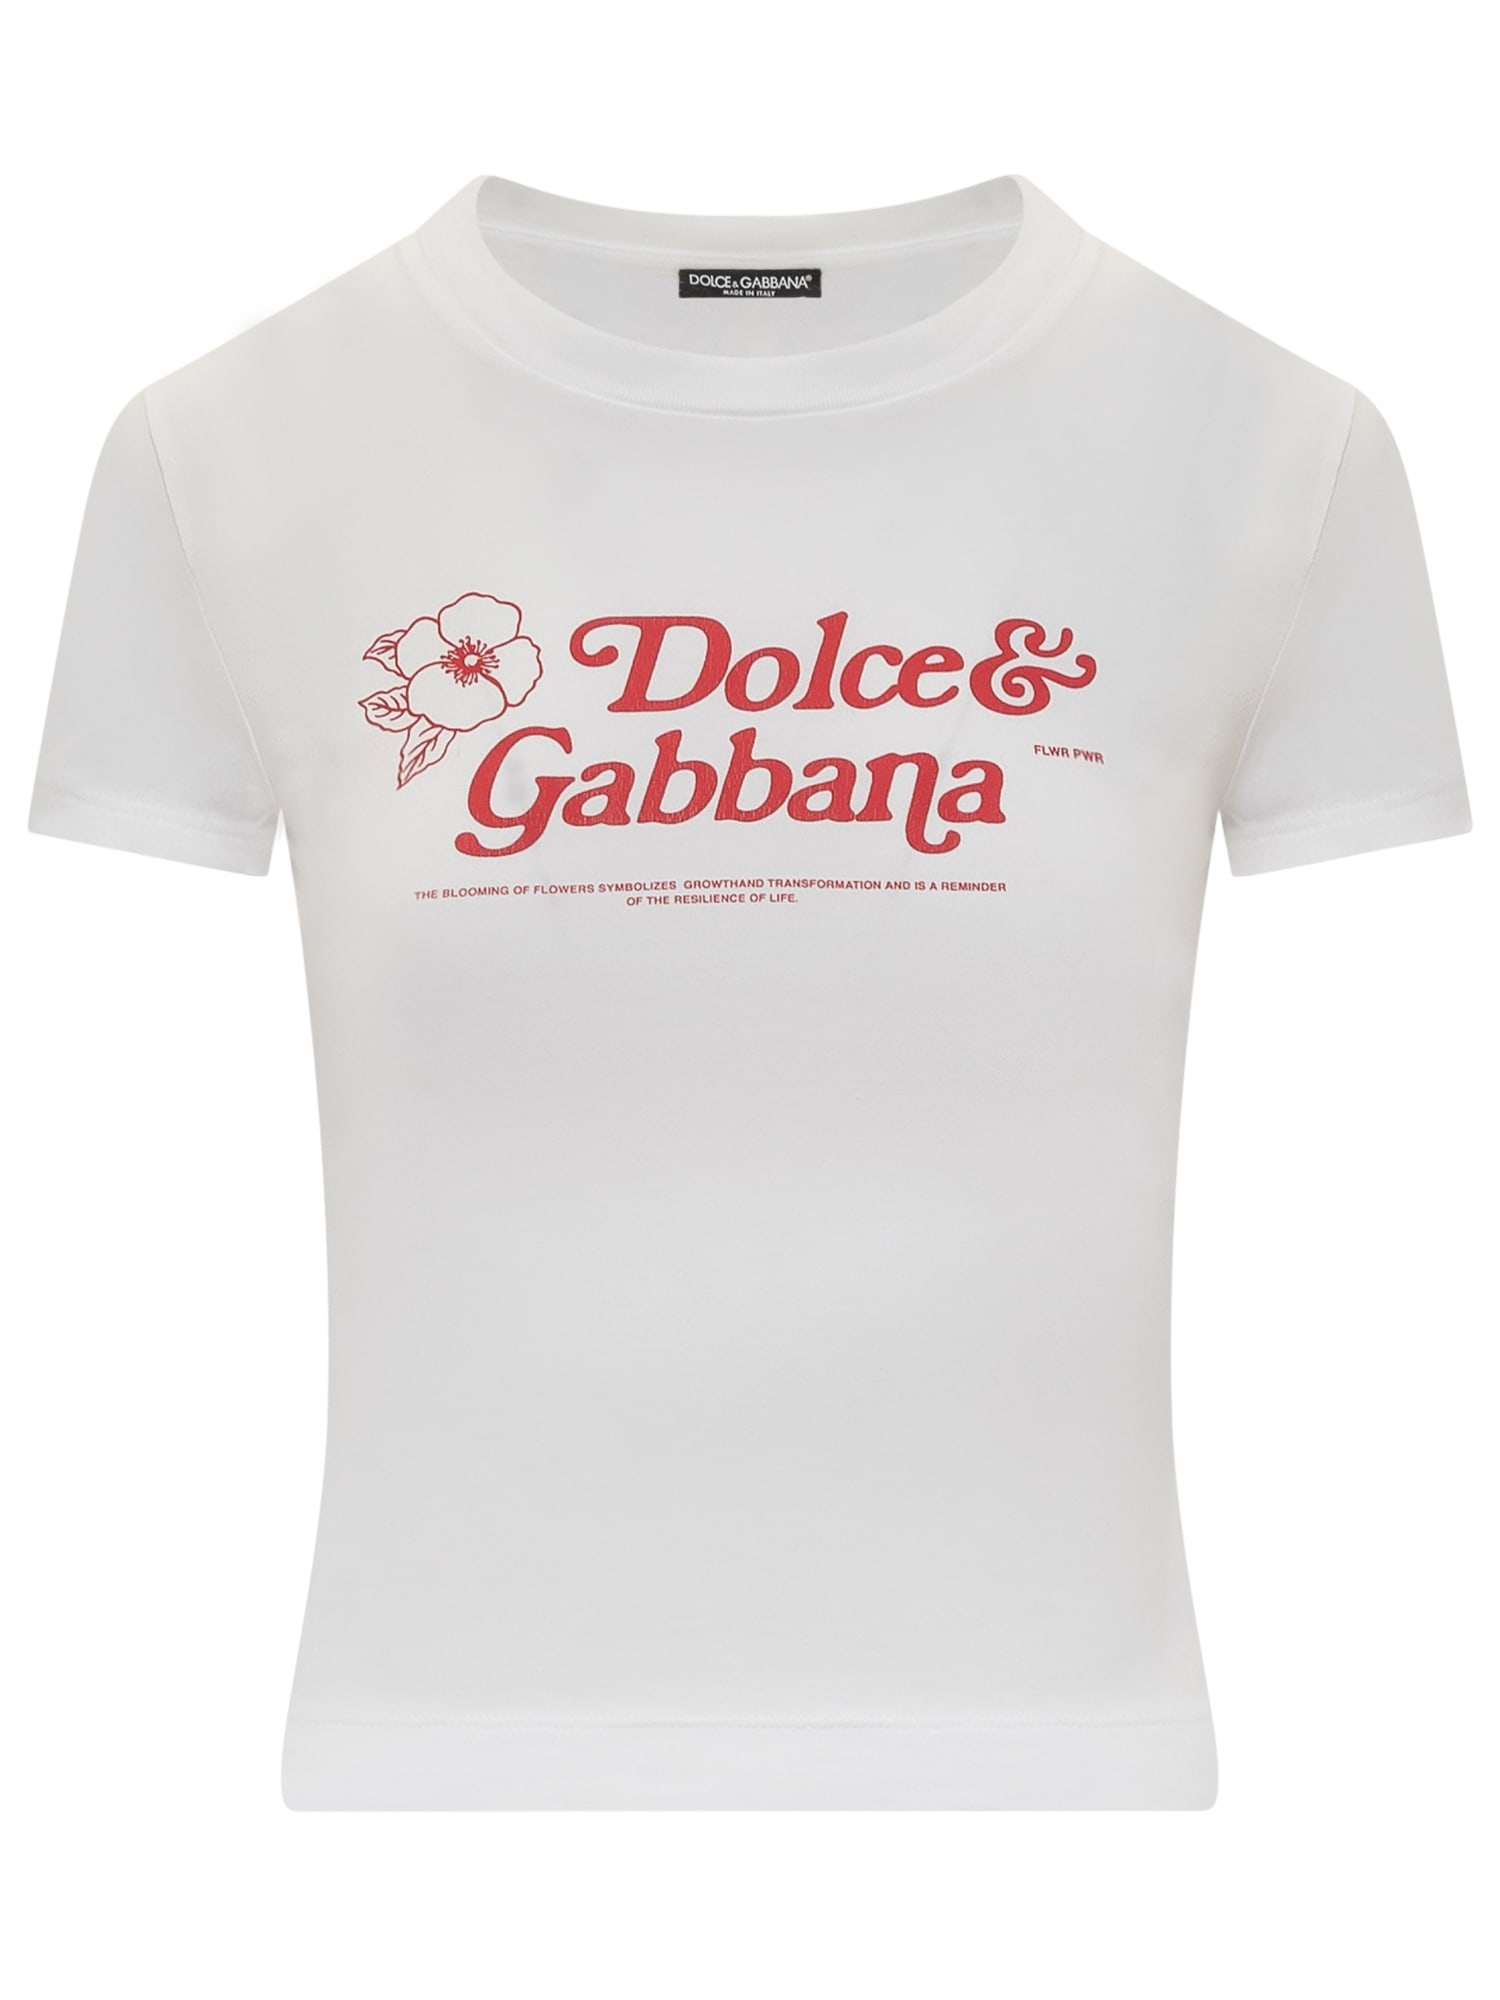 DOLCE & GABBANA T-SHIRT